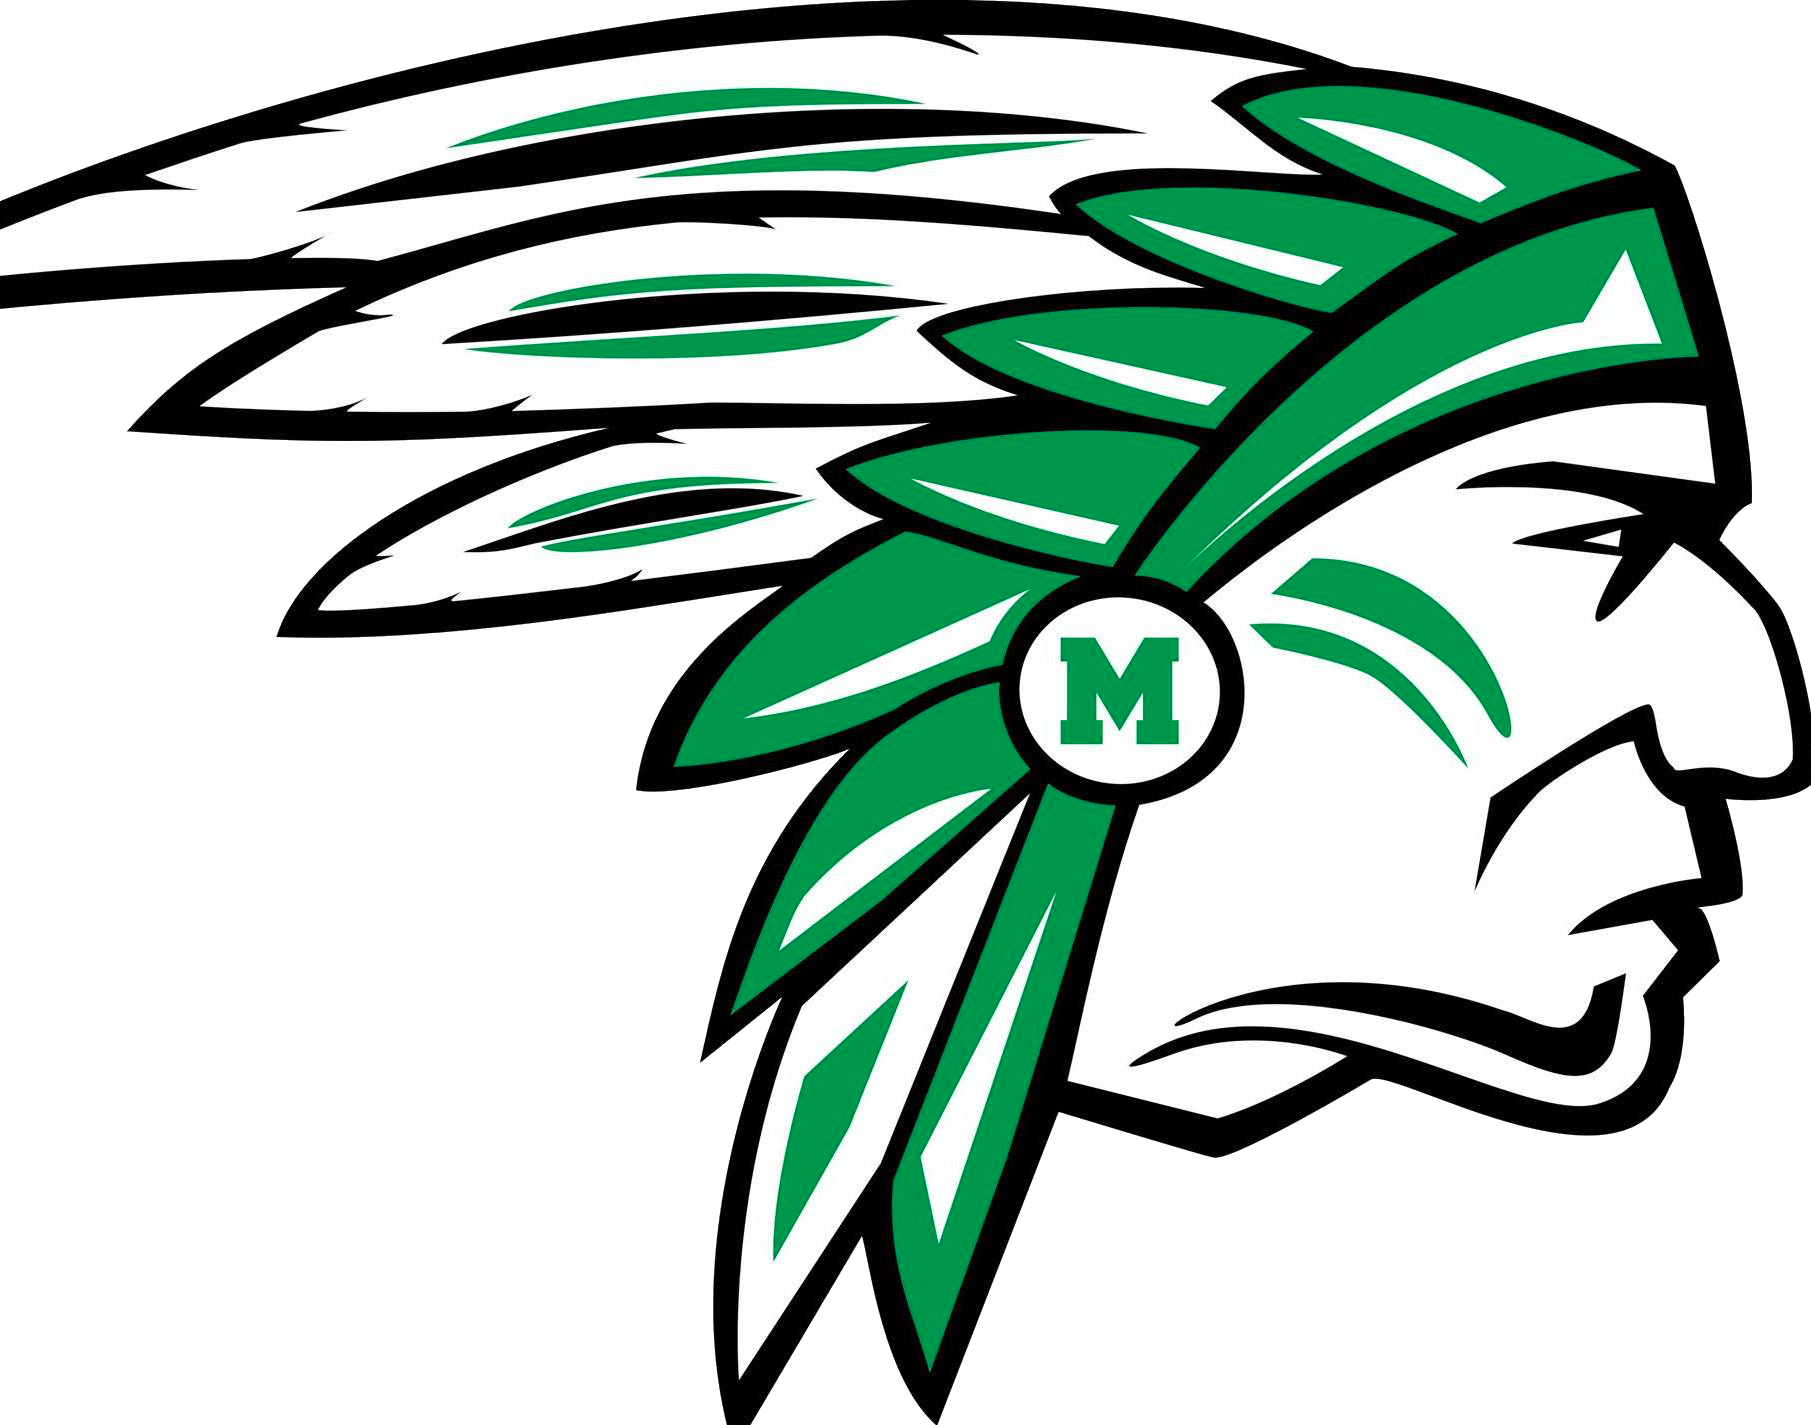 Mcintosh Logo - Mcintosh High School Football (1811x1425)